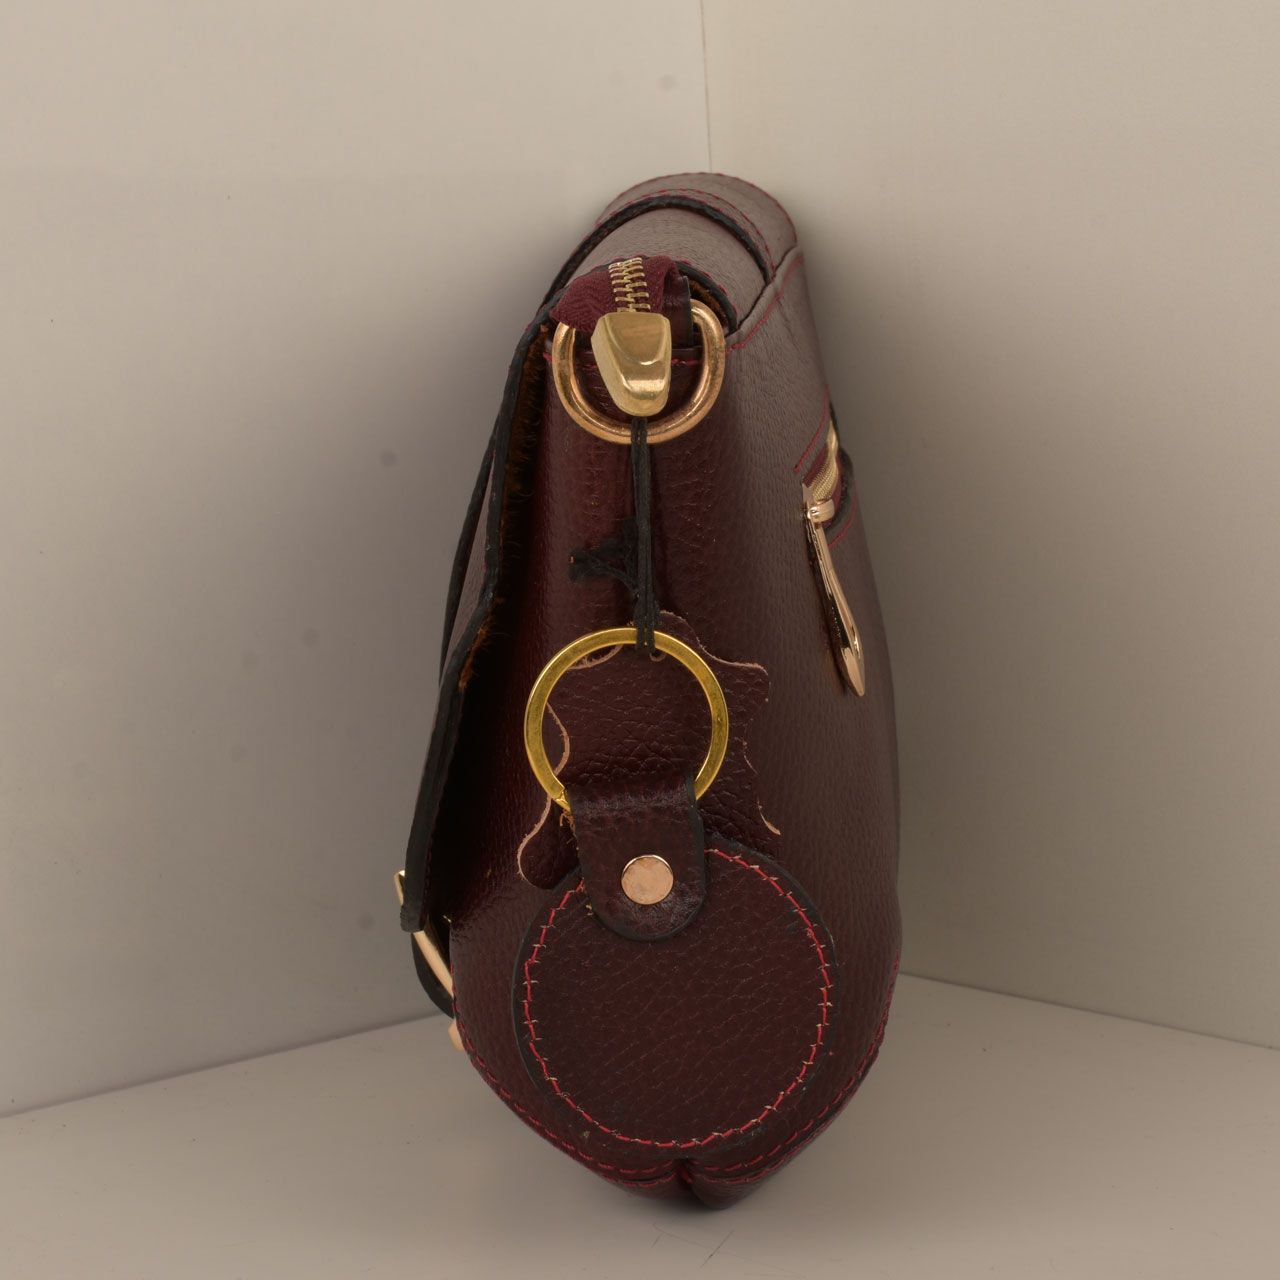  کیف دوشی زنانه پارینه چرم کد V189-12 -  - 3